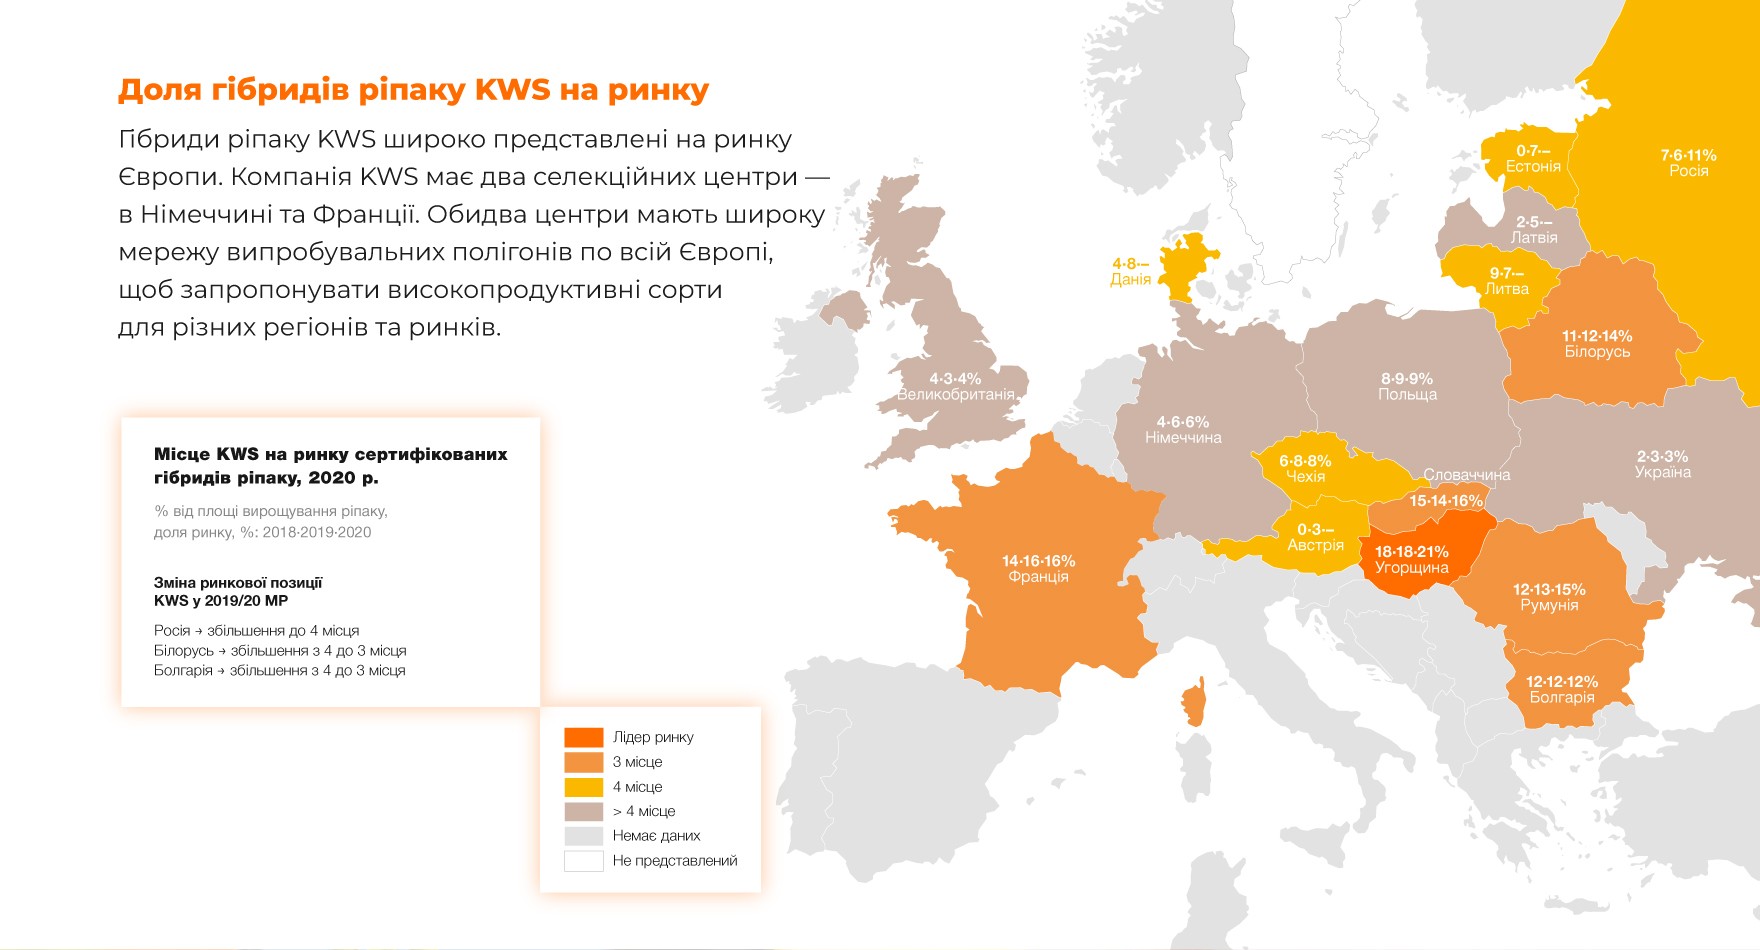 Доля гібридів ріпаку KWS на ринку. Гібриди ріпаку KWS широко представлені на ринку Європи. Компанія KWS має два селекційних центри — в Німеччині та Франції. Обидва центри мають широку мережу випробувальних полігонів по всій Європі, щоб запропонувати високопродуктивні сорти для різних регіонів та ринків.